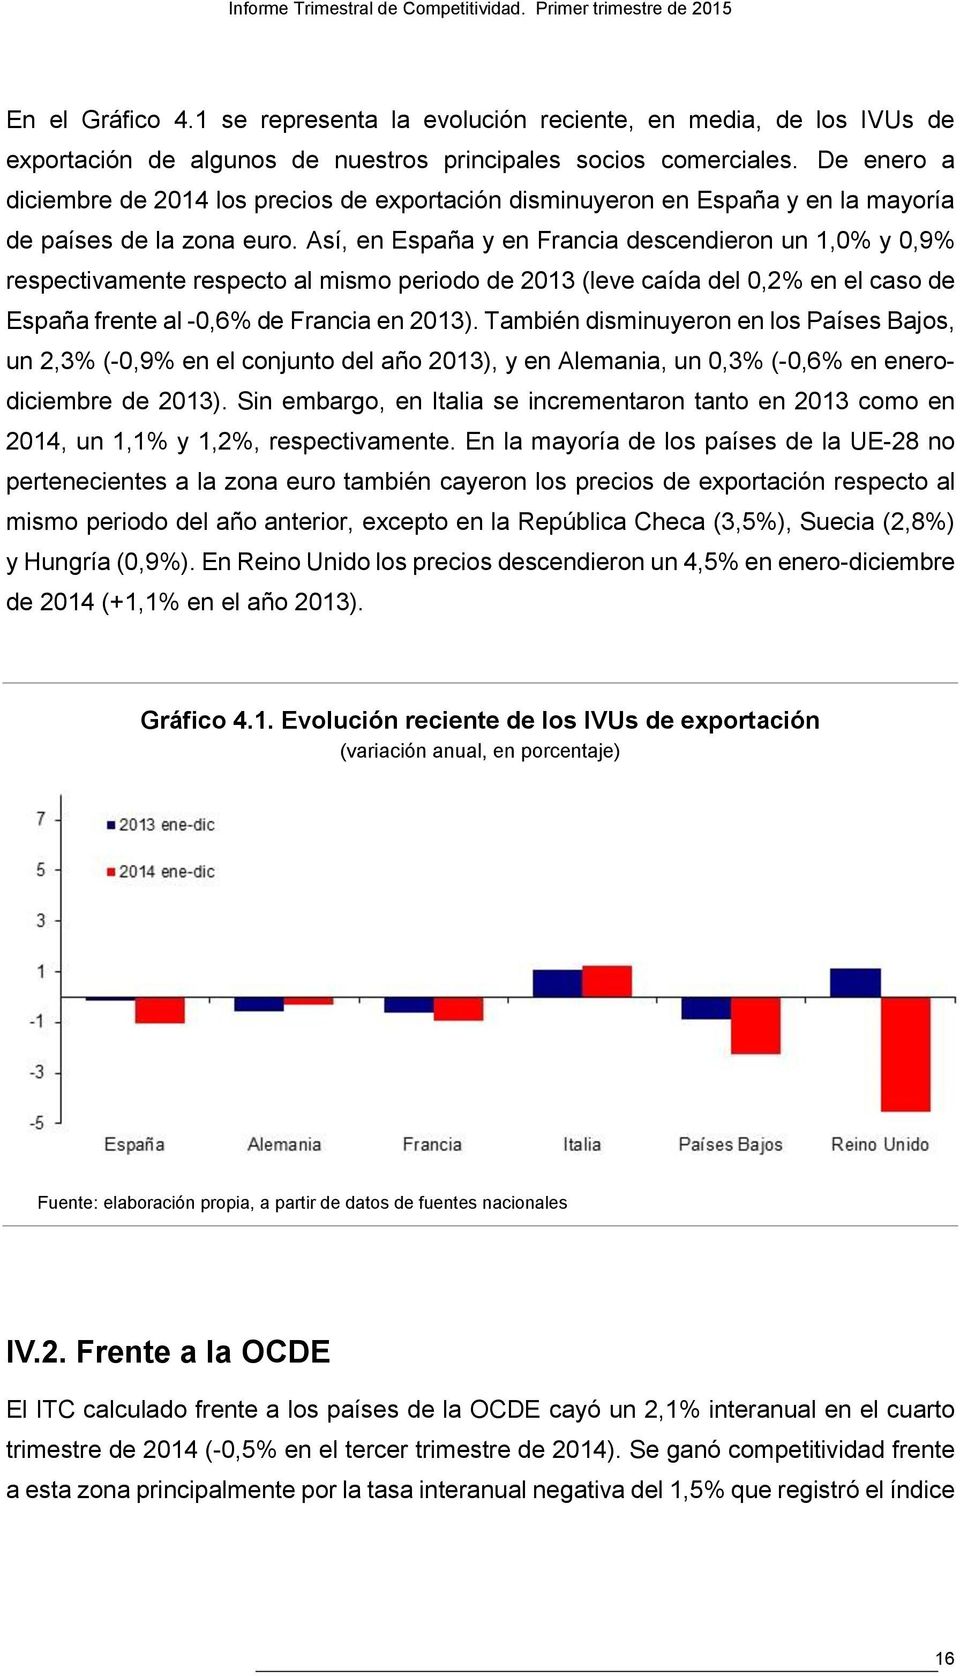 Así, en España y en Francia descendieron un 1,0% y 0,9% respectivamente respecto al mismo periodo de 2013 (leve caída del 0,2% en el caso de España frente al -0,6% de Francia en 2013).